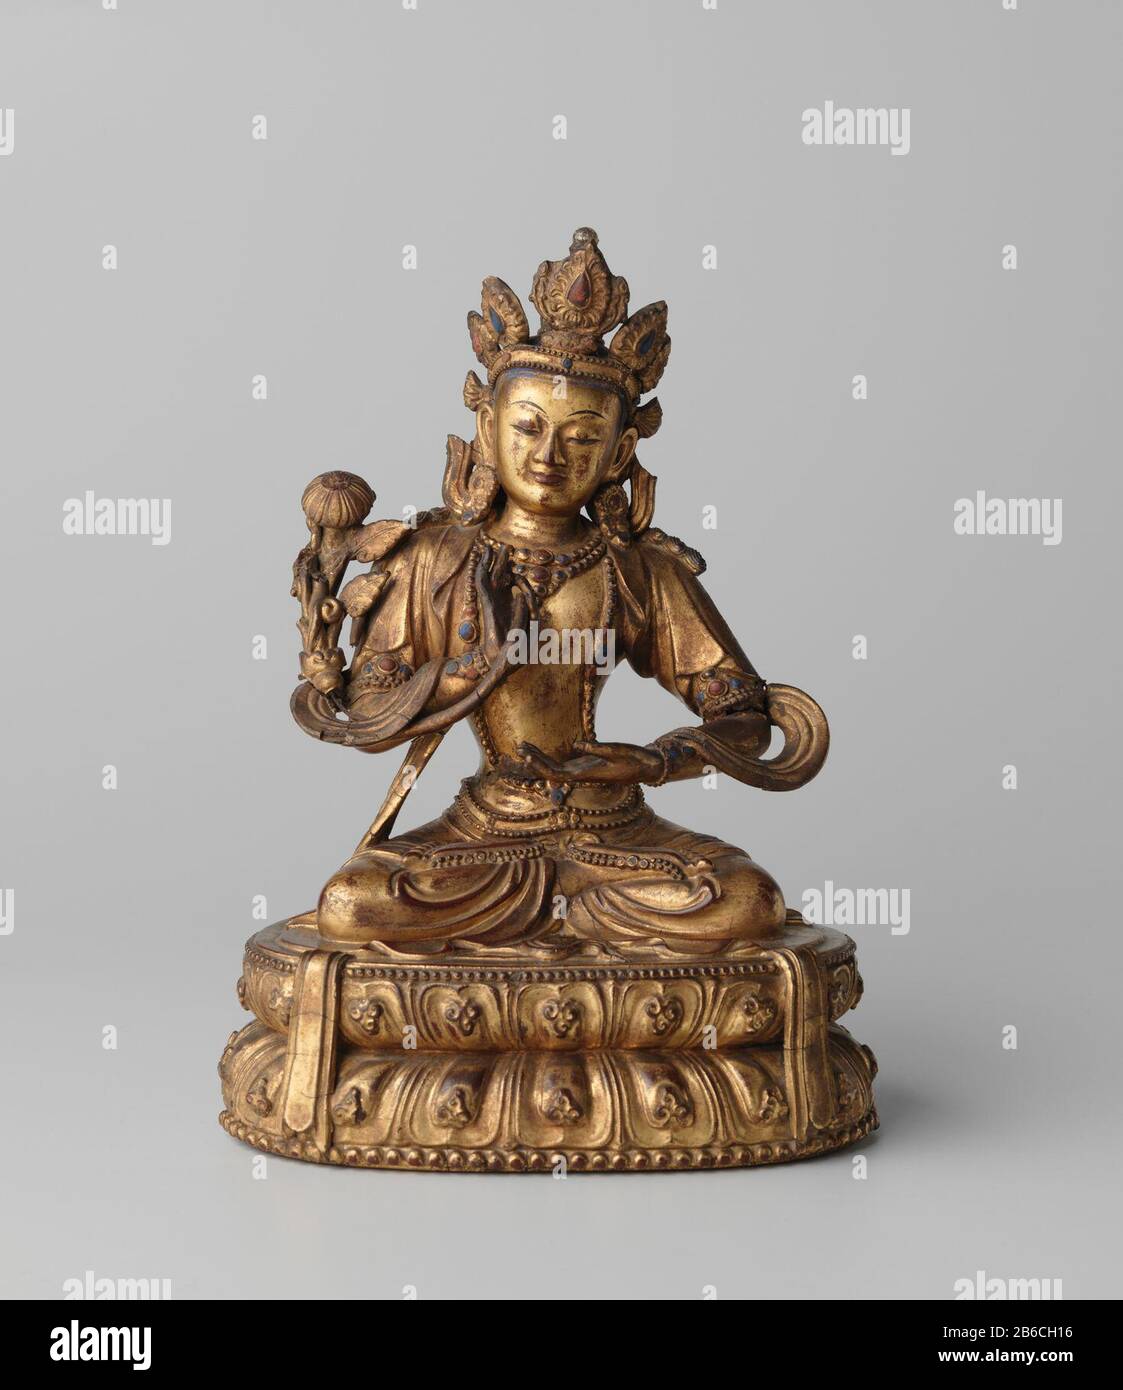 Statue d'un bodhisattva Beeld van een zittende bodhisattva assis (Mahstharapta ?). De bodhisattva houdt een lotusstengel in zijn rechtermain. Zijn linkerHand houdt hij met de Palm naar boven voor zijn intermédiaire. Fabricant : beeldhouwer: Fabrication d'anoniemPlaats: Chine Dating: CA. 1400 - ca. 1500 matériau: Hout lak verguddsel Techniek: Vergulden Dimensions: H 23 cm × b 16,7 cm × d 13 cm Banque D'Images